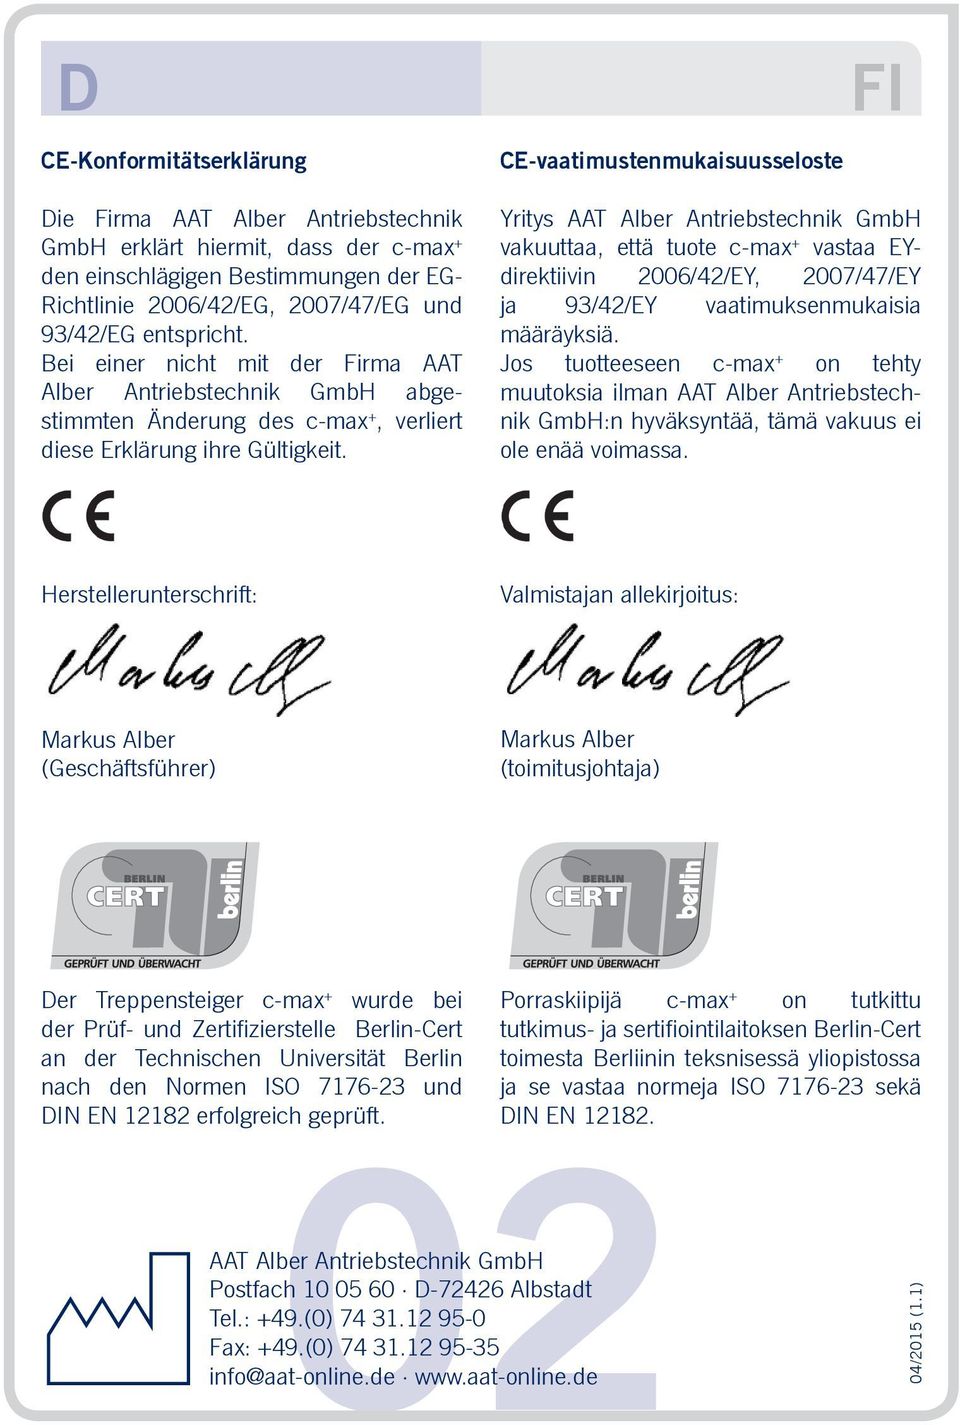 CE-vaatimustenmukaisuusseloste Yritys AAT Alber Antriebstechnik GmbH vakuuttaa, että tuote c-max + vastaa EYdirektiivin 2006/42/EY, 2007/47/EY ja 93/42/EY vaatimuksenmukaisia määräyksiä.